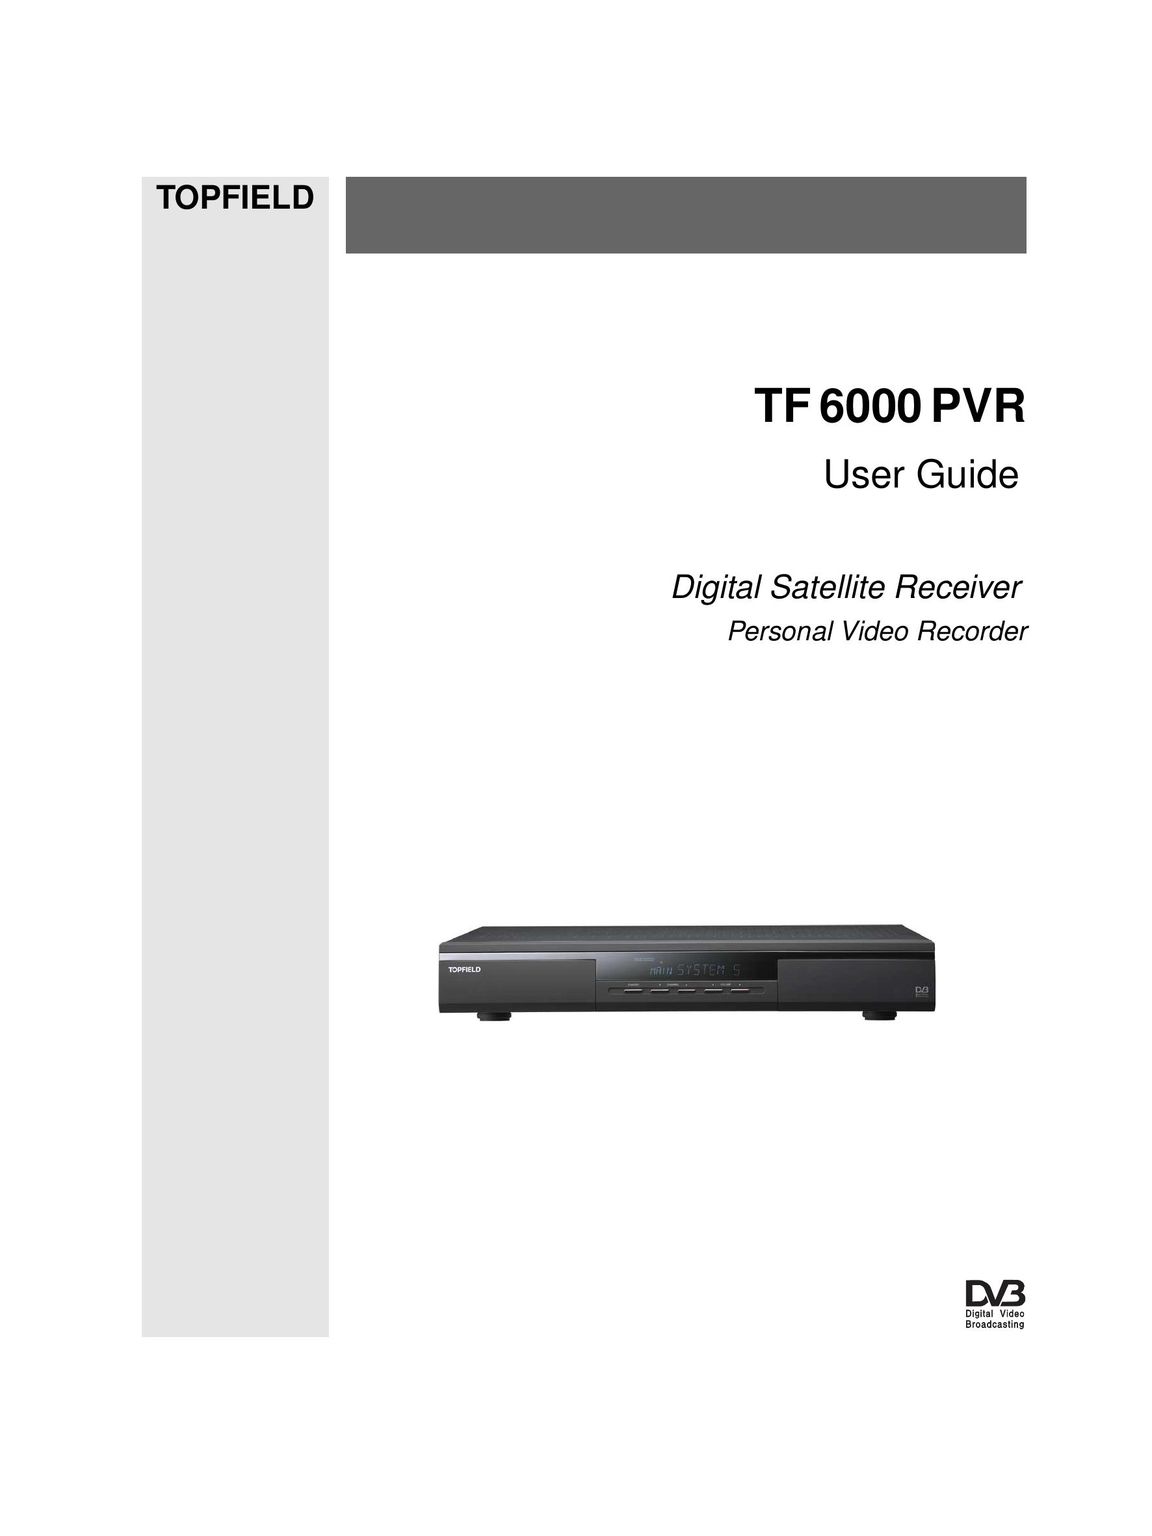 Topfield TF 6000 PVR Satellite TV System User Manual